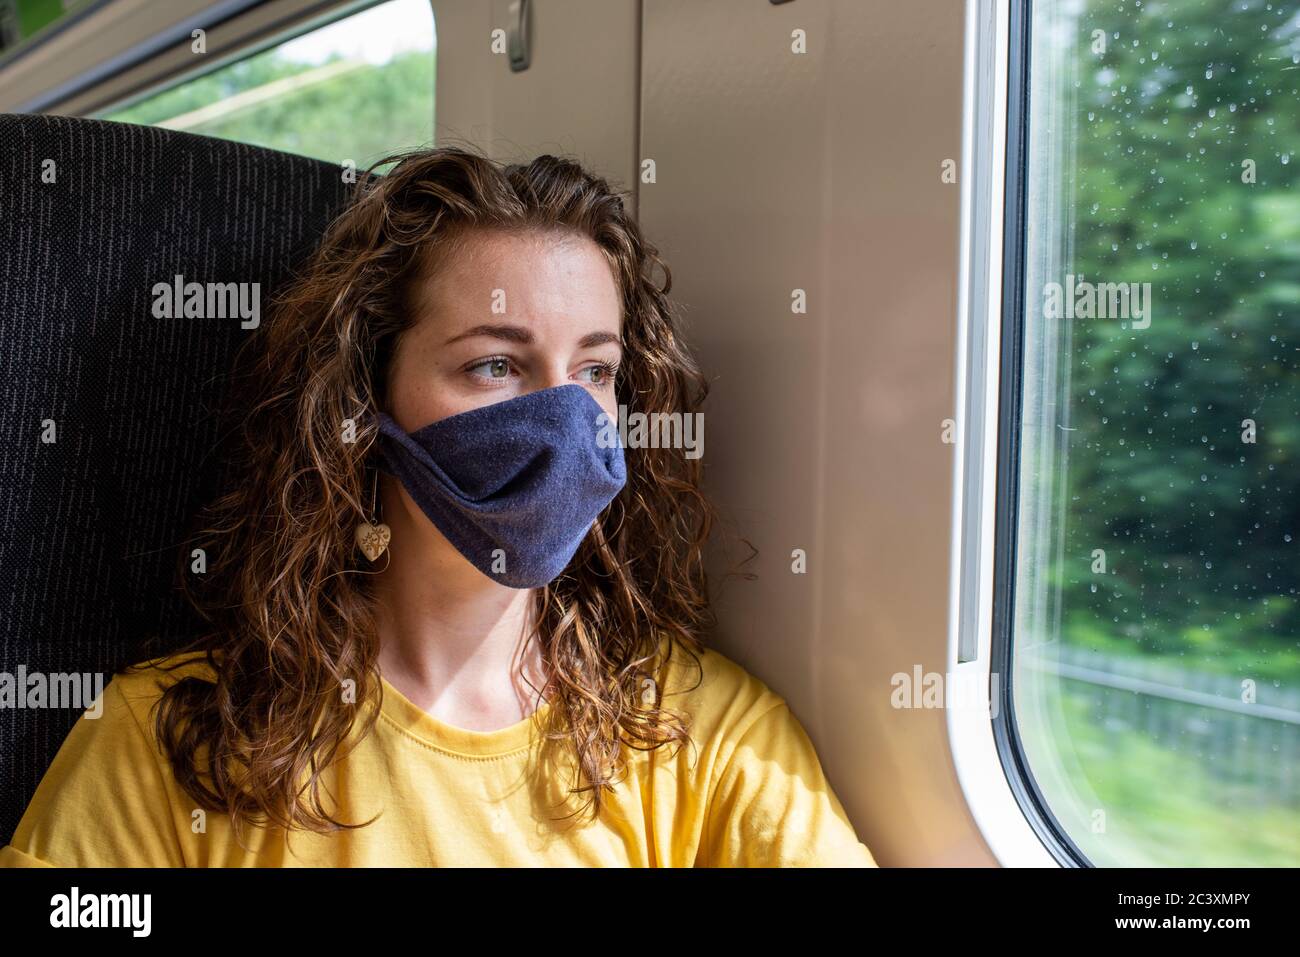 Indossare una maschera sul treno coronavirus uk viaggio ferrovia trasporto pubblico distanza sociale rimanere al sicuro Foto Stock